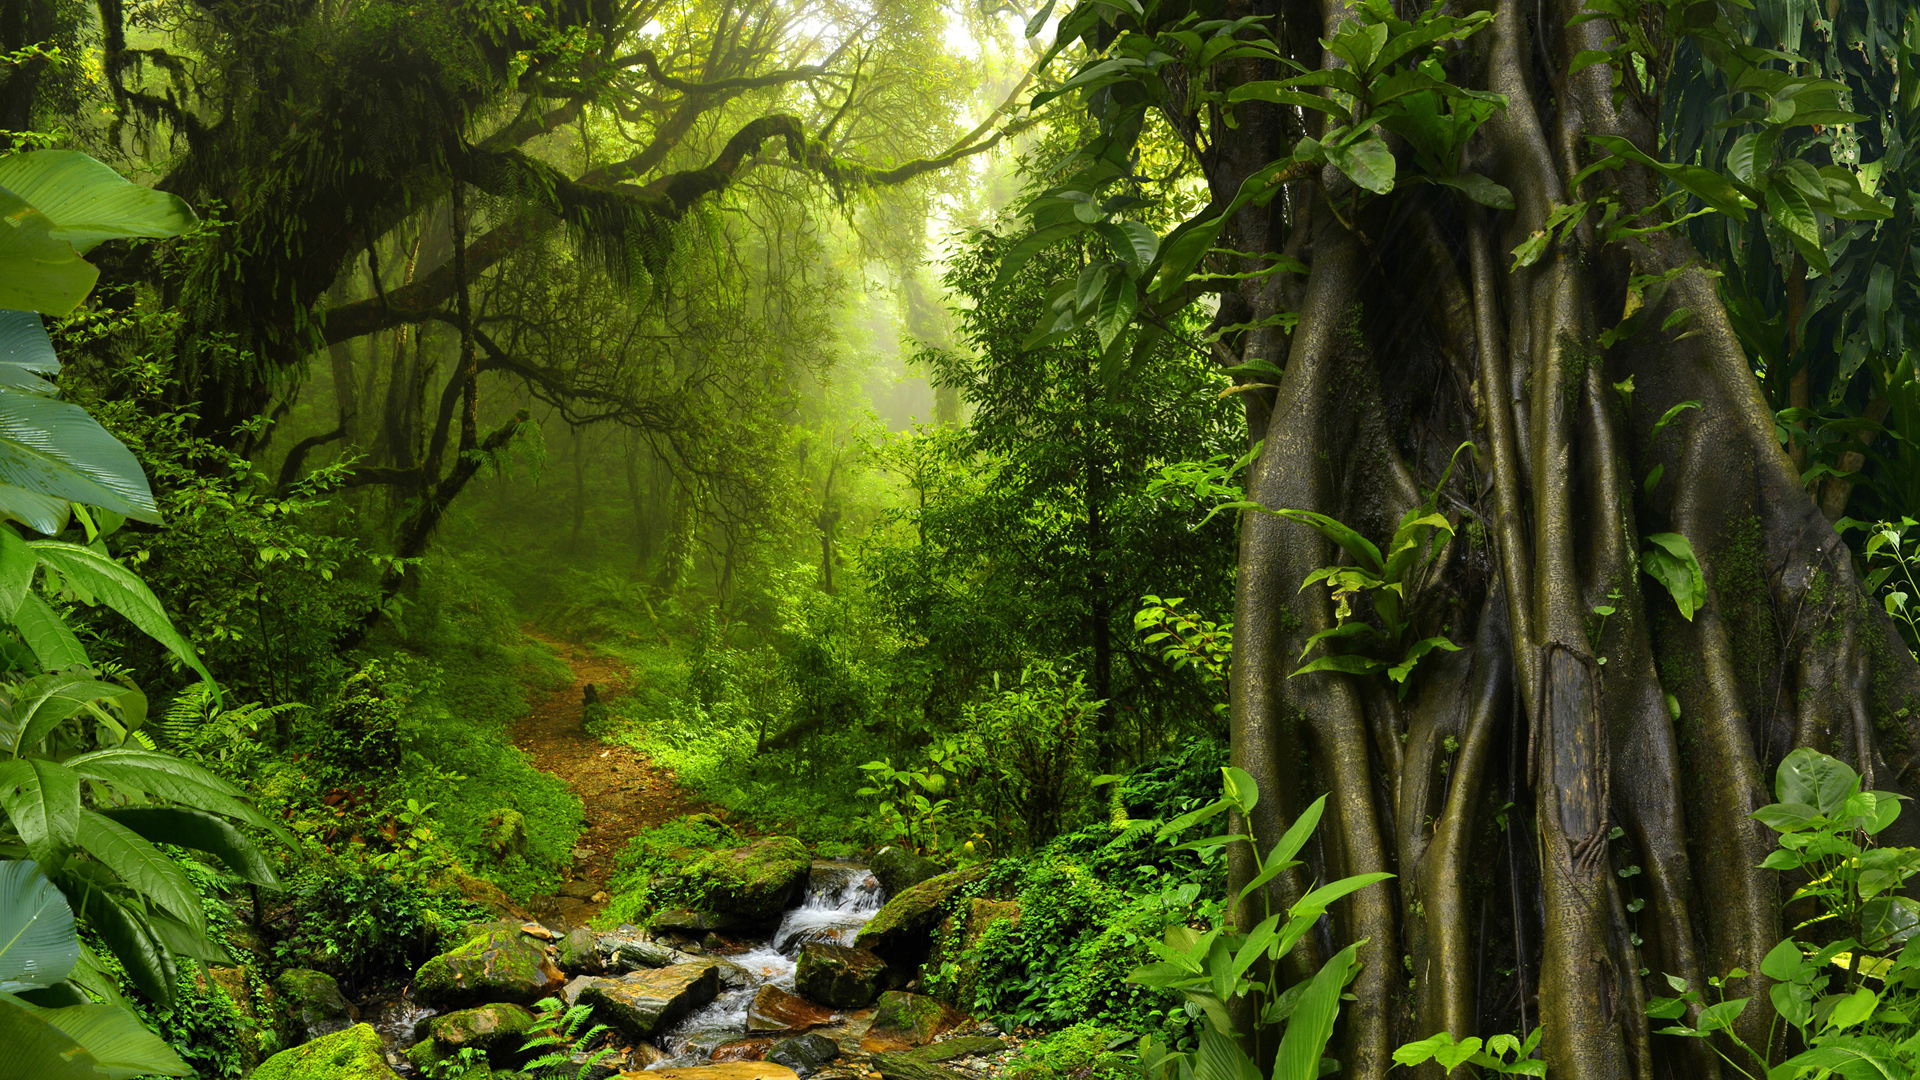 热带丛林小溪,森林树木,绿色叶子,行人路,苔藓,泰国风景桌面壁纸